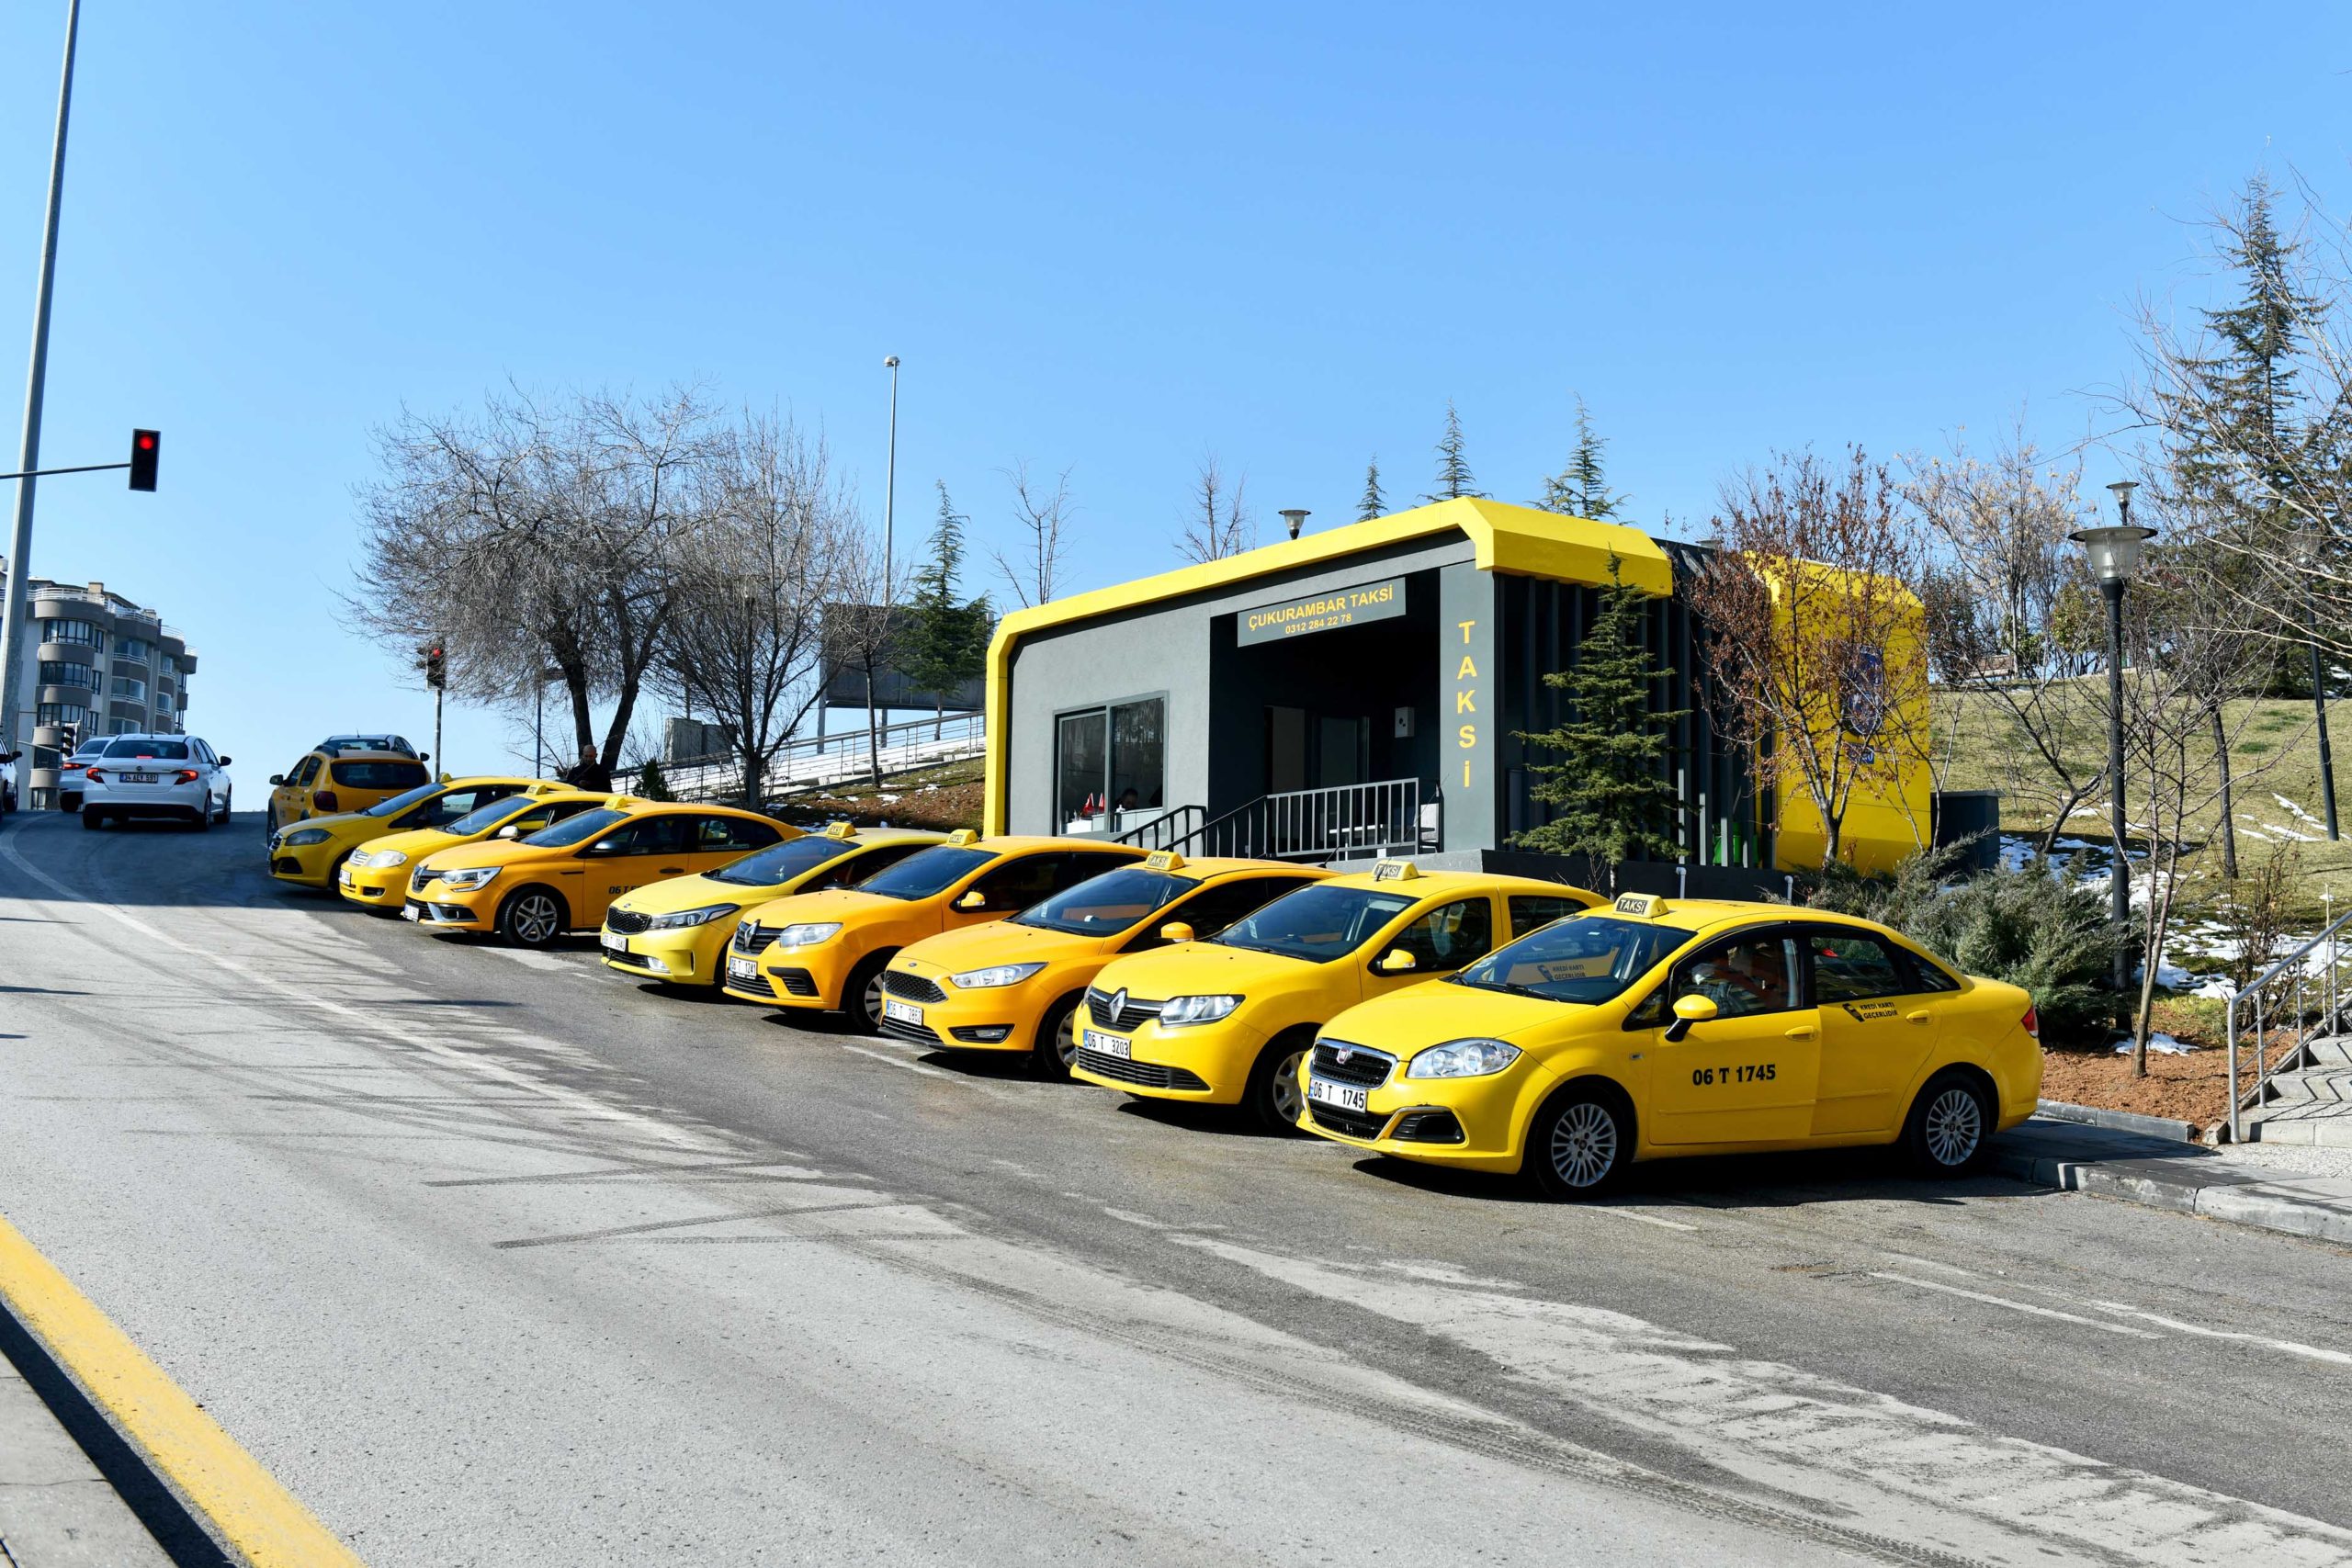  Başkent’te Taksi Durakları Yenilendi